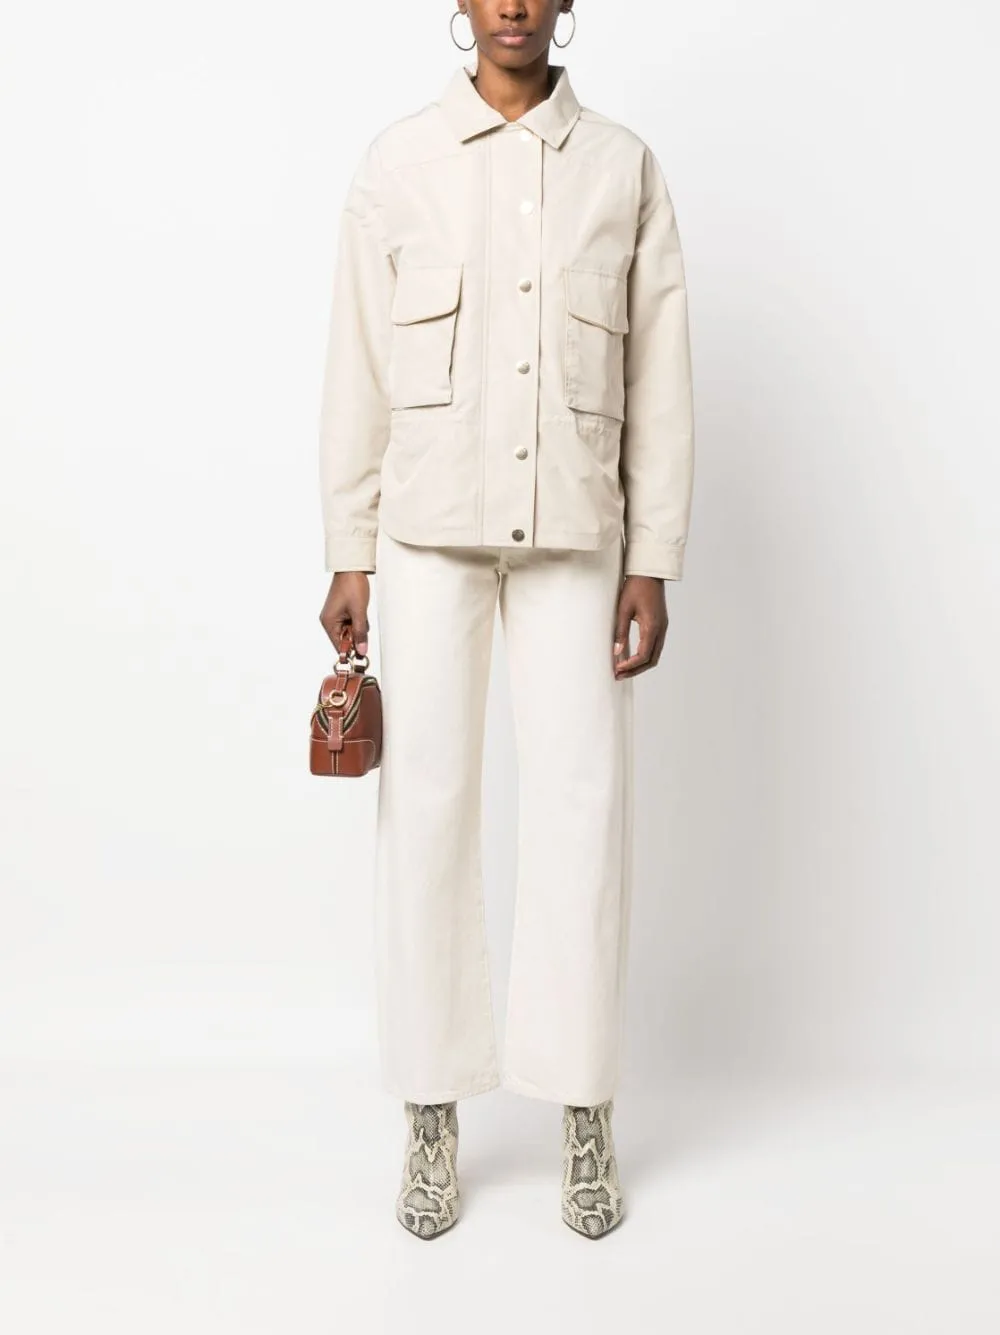 Designer-Damenjacke Kiton-Jacke mit Druckknopfverschluss, lange Ärmel, Mäntel, Frühlingsoberbekleidung, modische Jacken für Damen